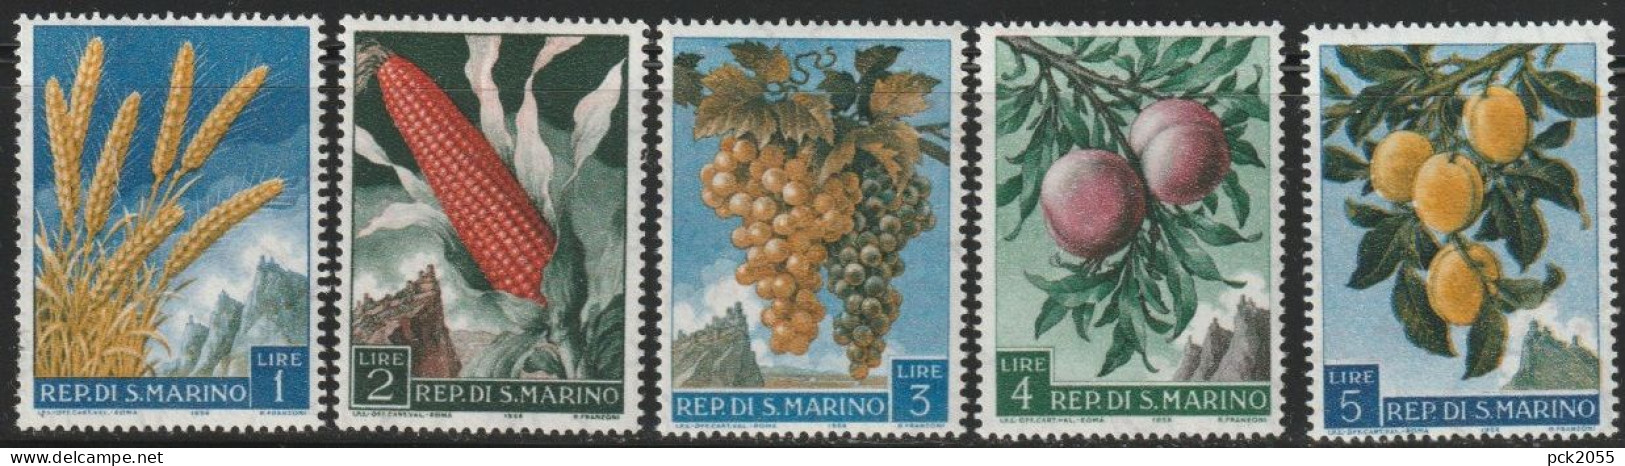 San Marino 1958 Mi Nr. 594 - 598 ** Postfrisch Früchte ( 632) Günstige Versandkosten - Nuovi